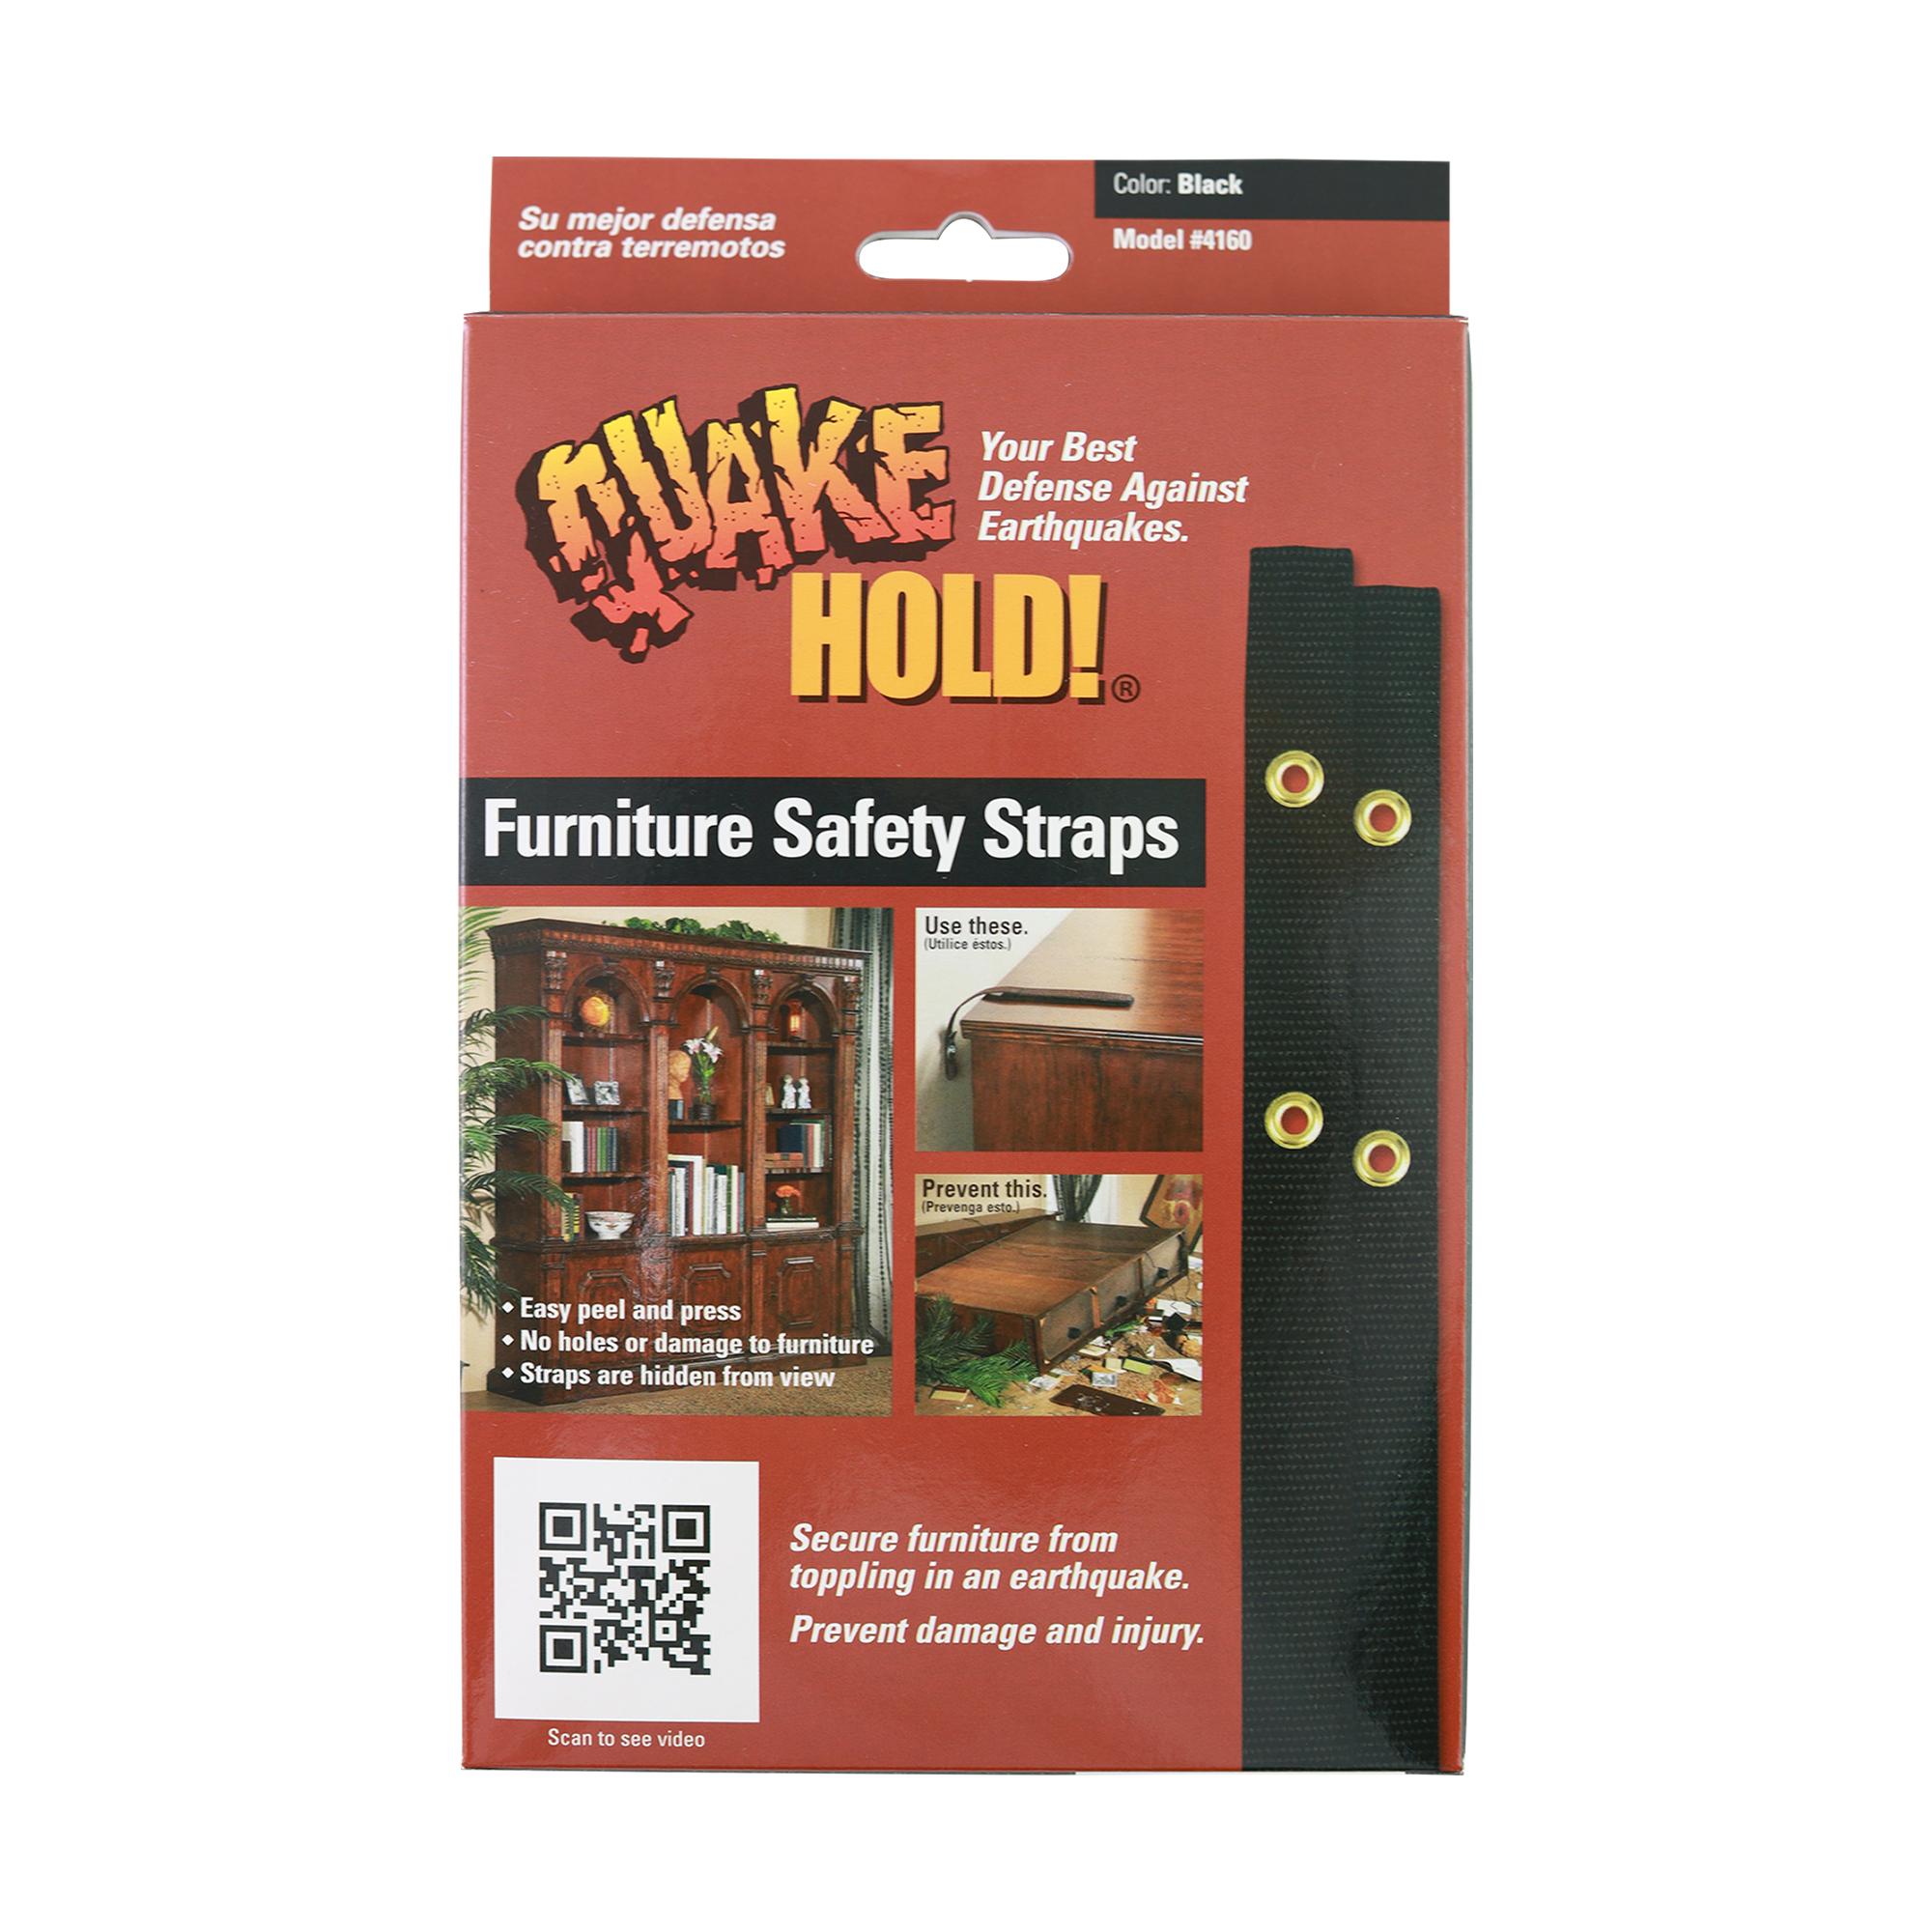 Quake Hold! Furniture Safety Straps - Model #4164 White